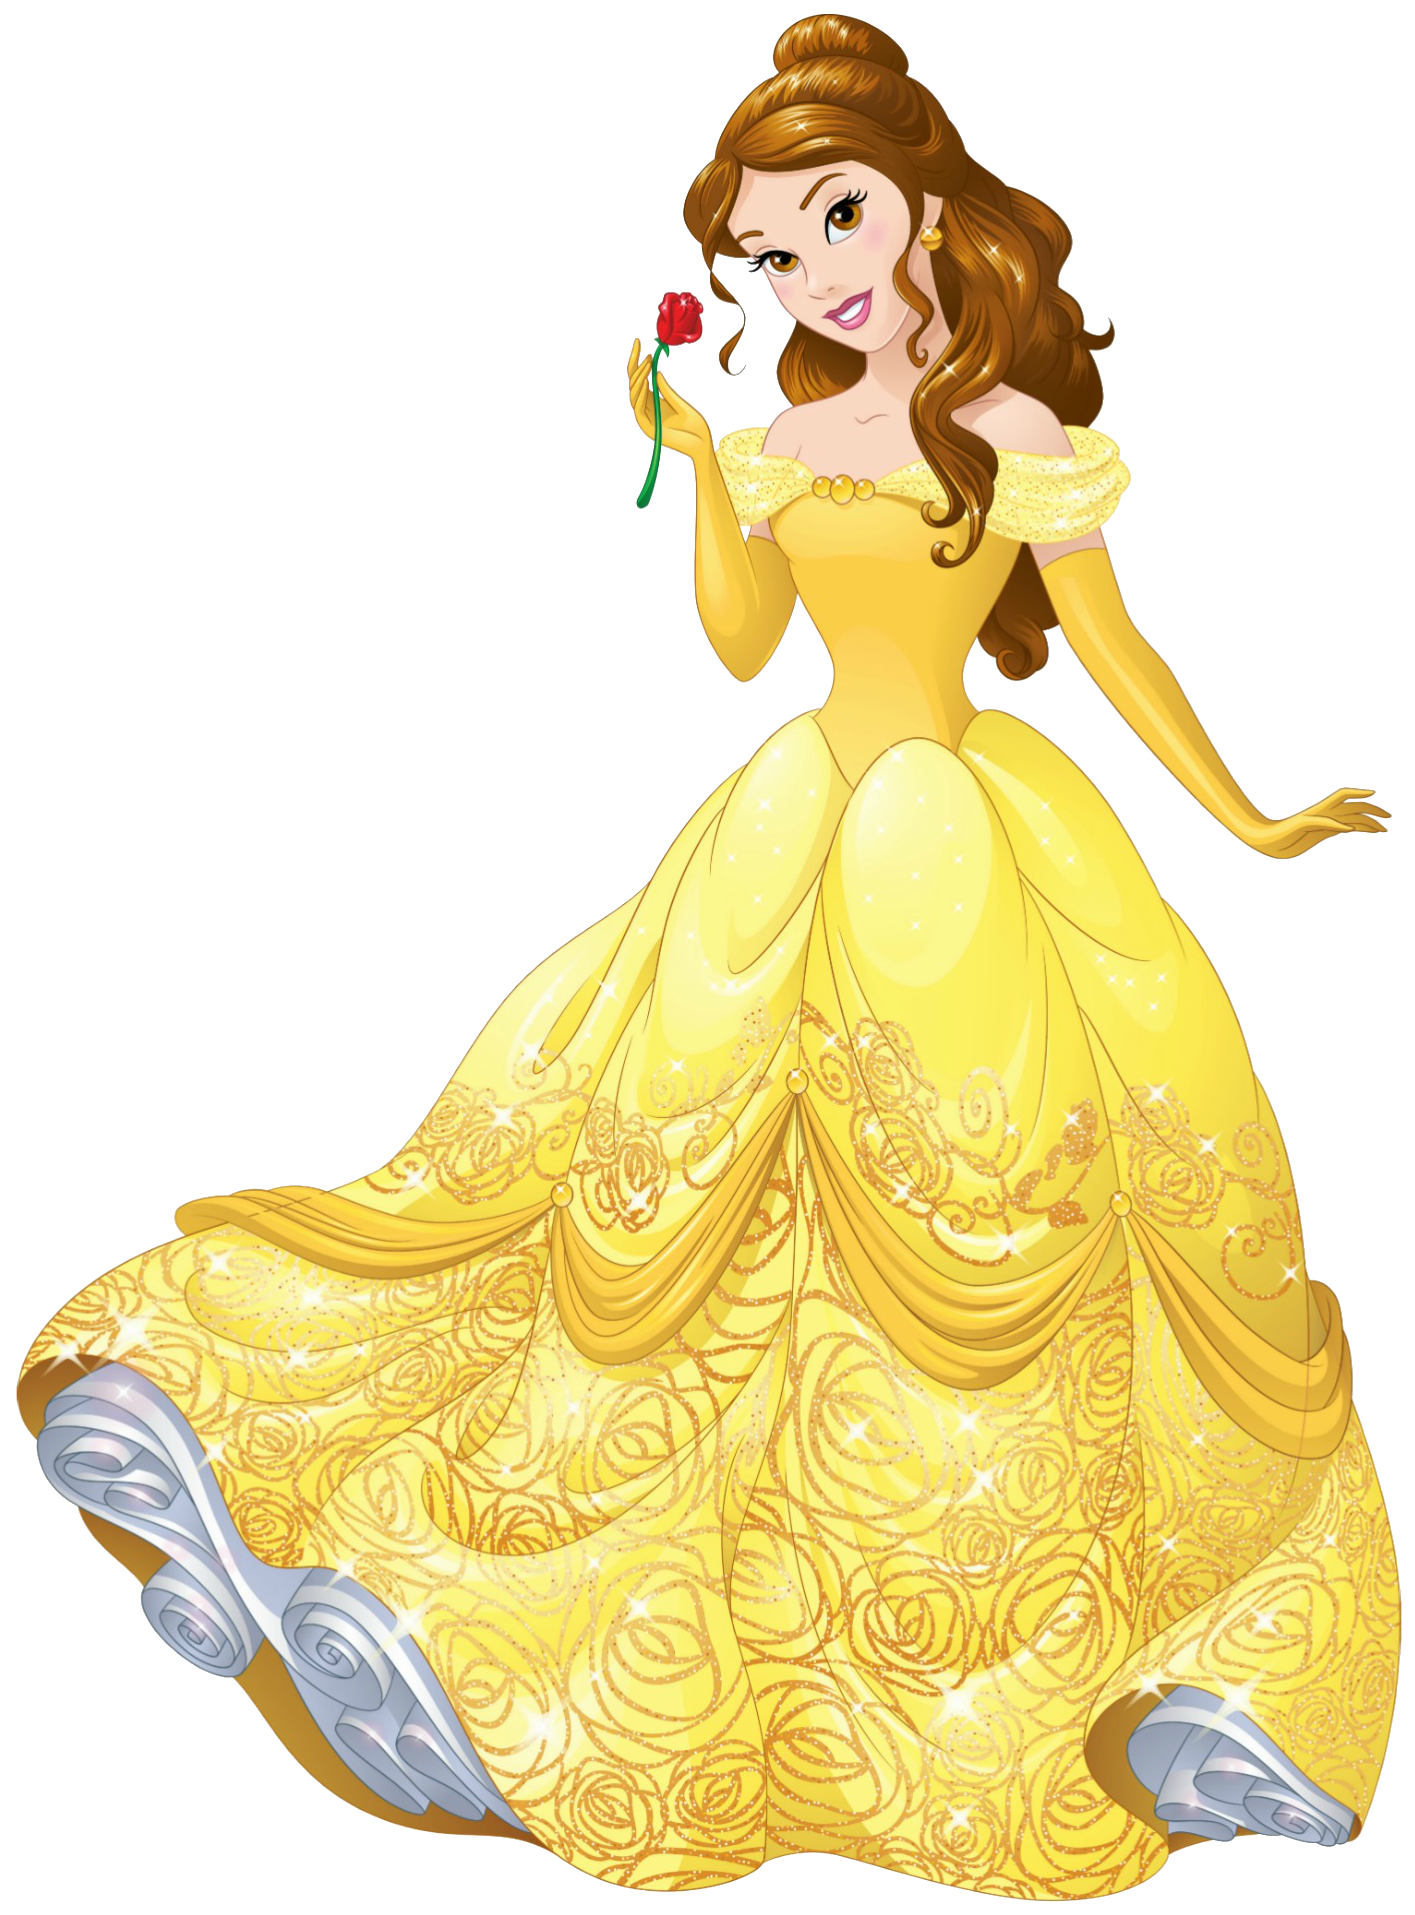 Princess/Princesa - Wikipedia